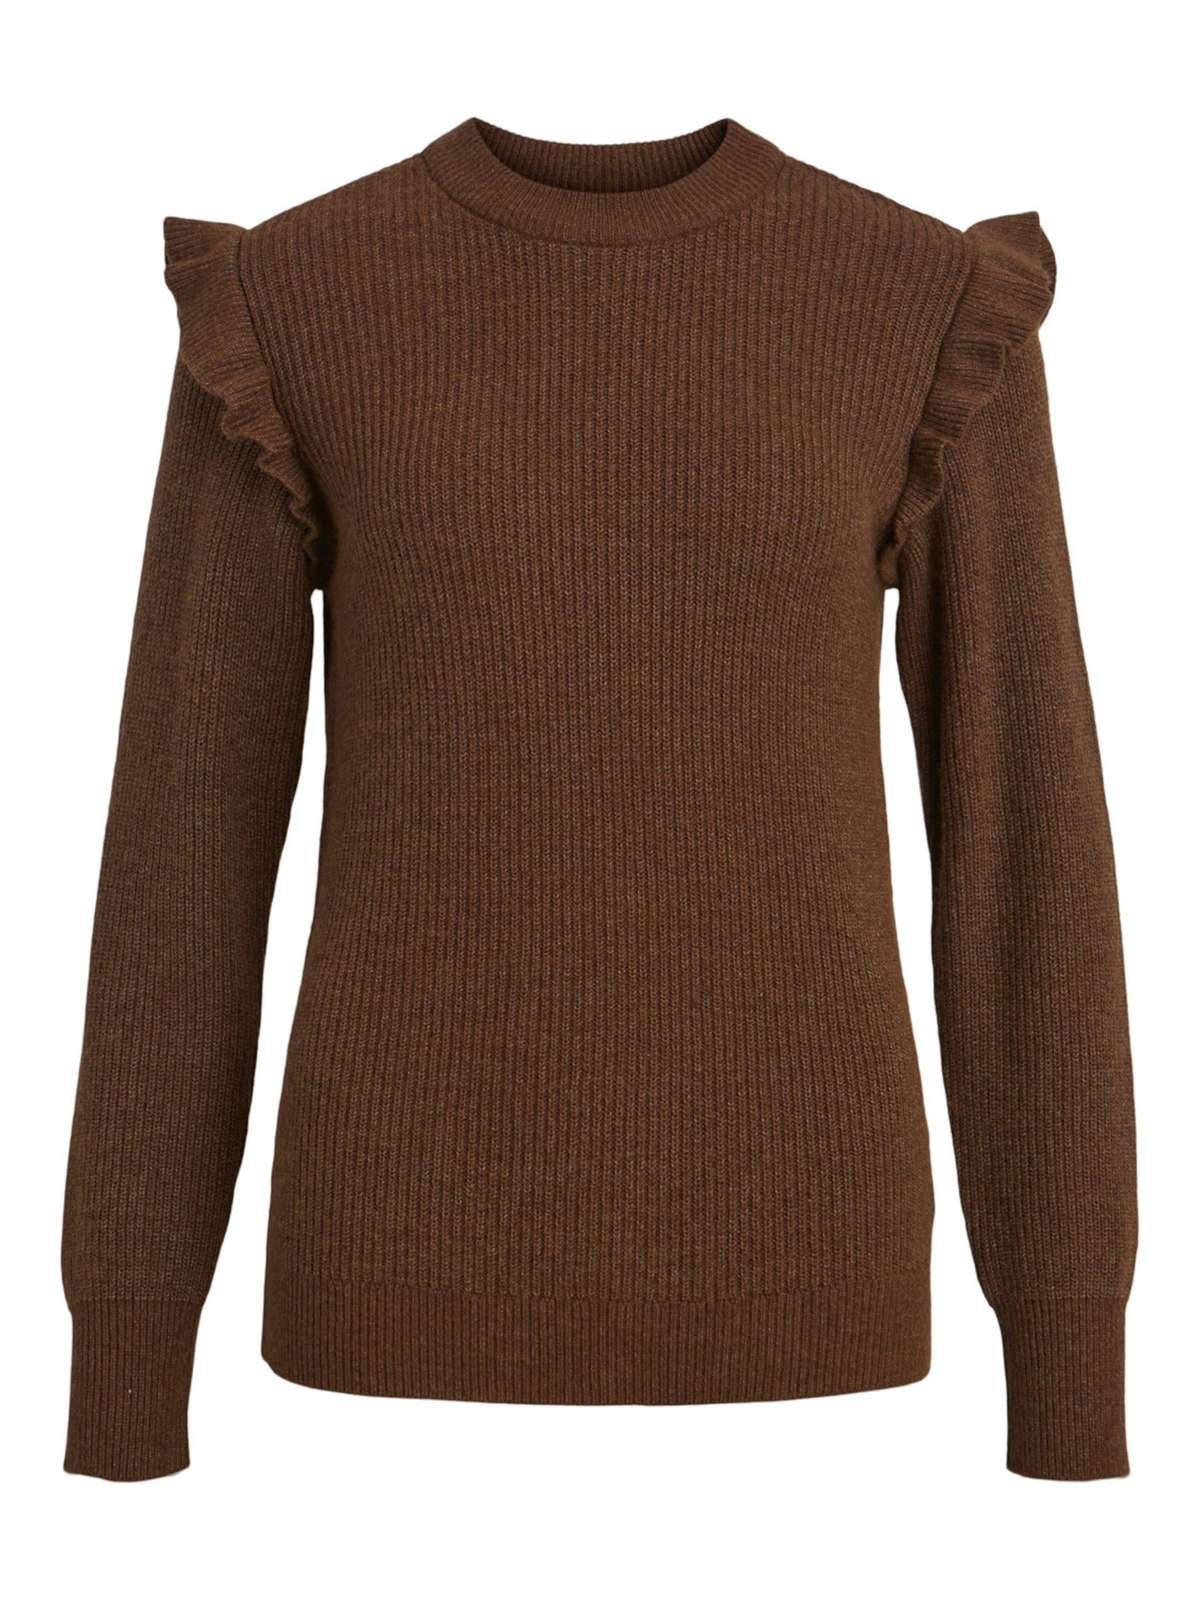 Вязаный свитер Малена (1 шт.) рюши